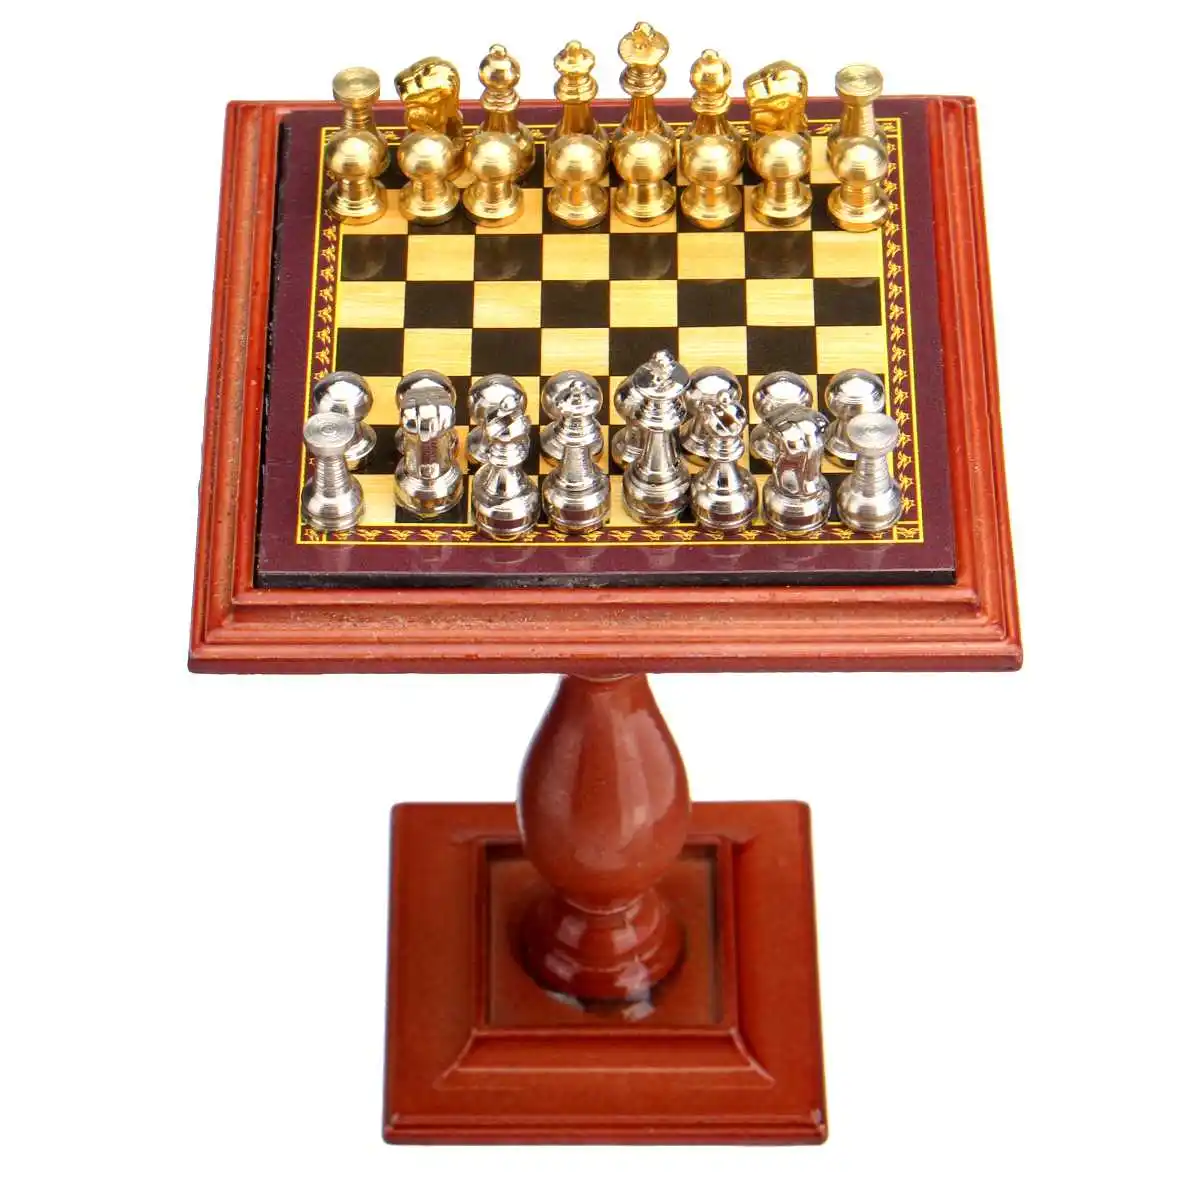 1:12 Масштаб миниатюрные шахматы набор с настольным магнитом шахматы штук развлечения мини шахматная игра стенд миниатюрная сцена модель игровой игрушки